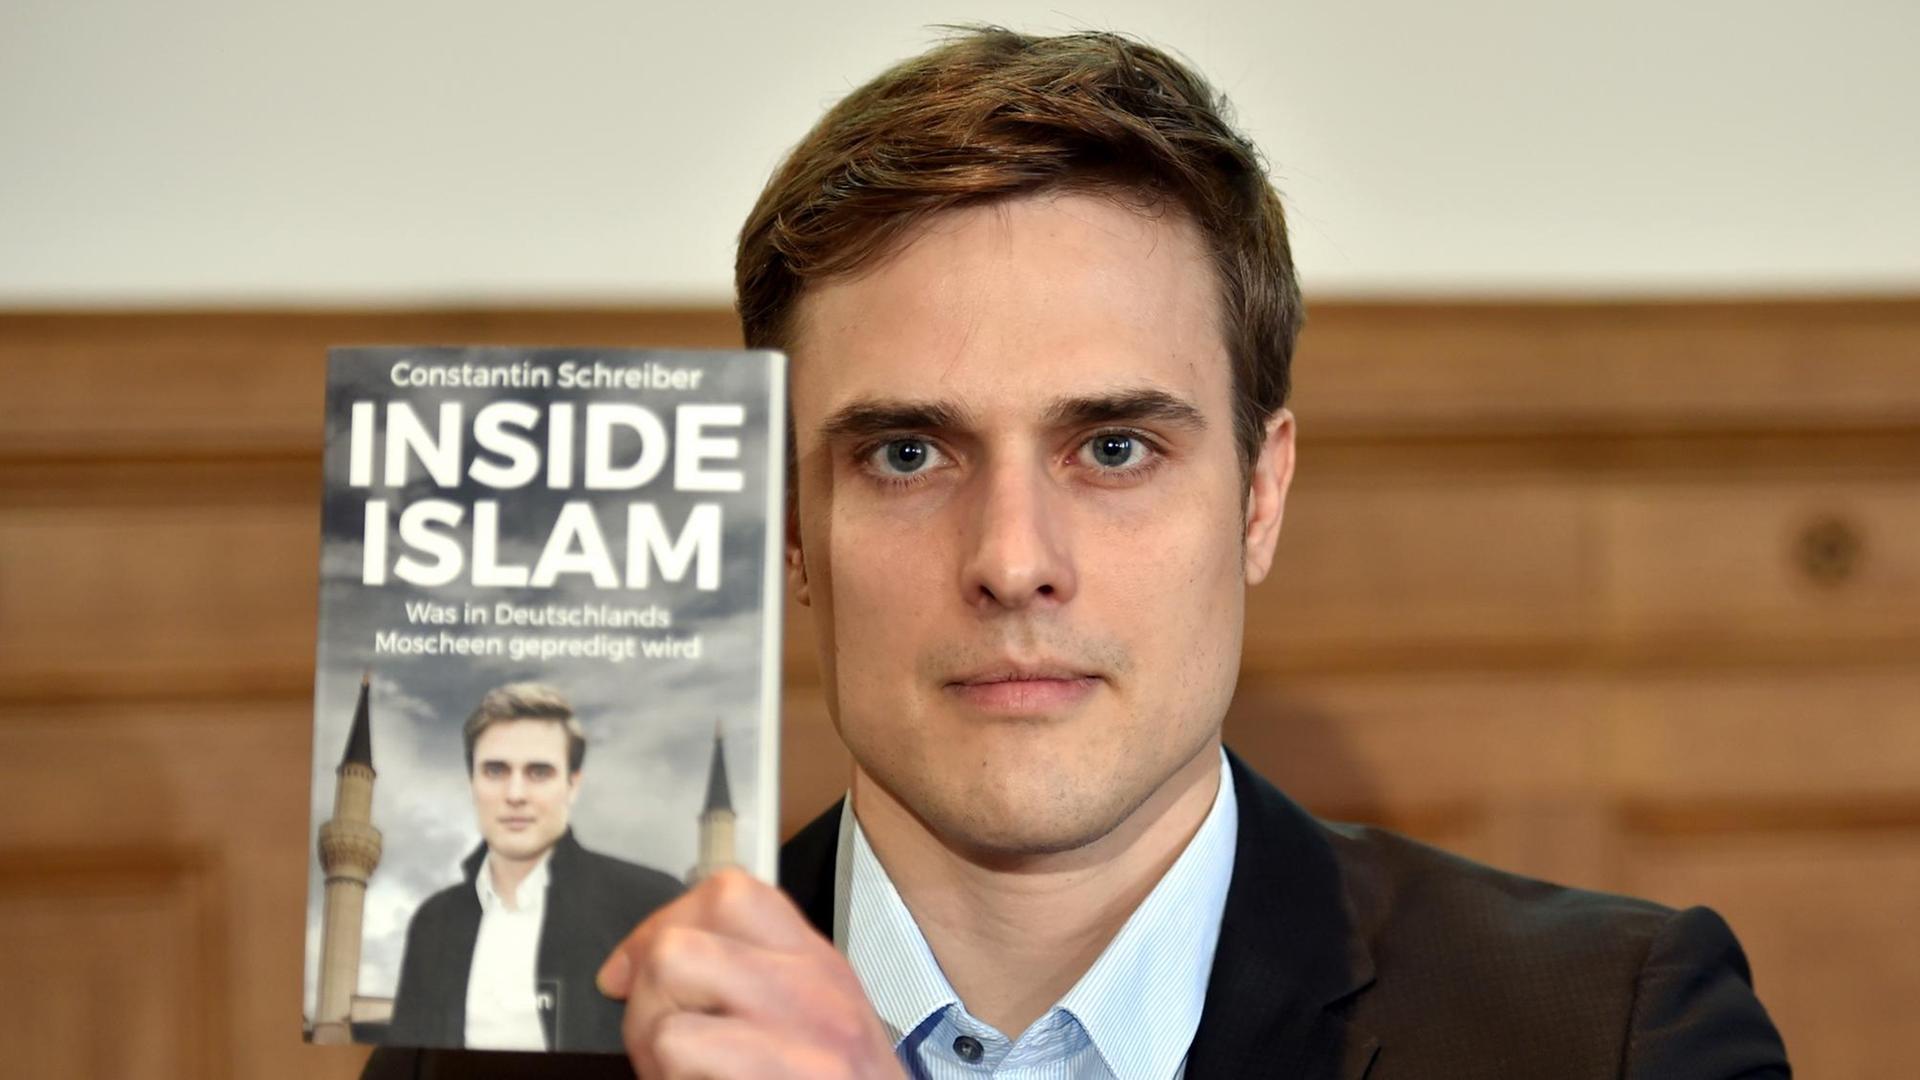 Constantin Schreiber bei der Vorstellung seines Buches "Inside Islam"